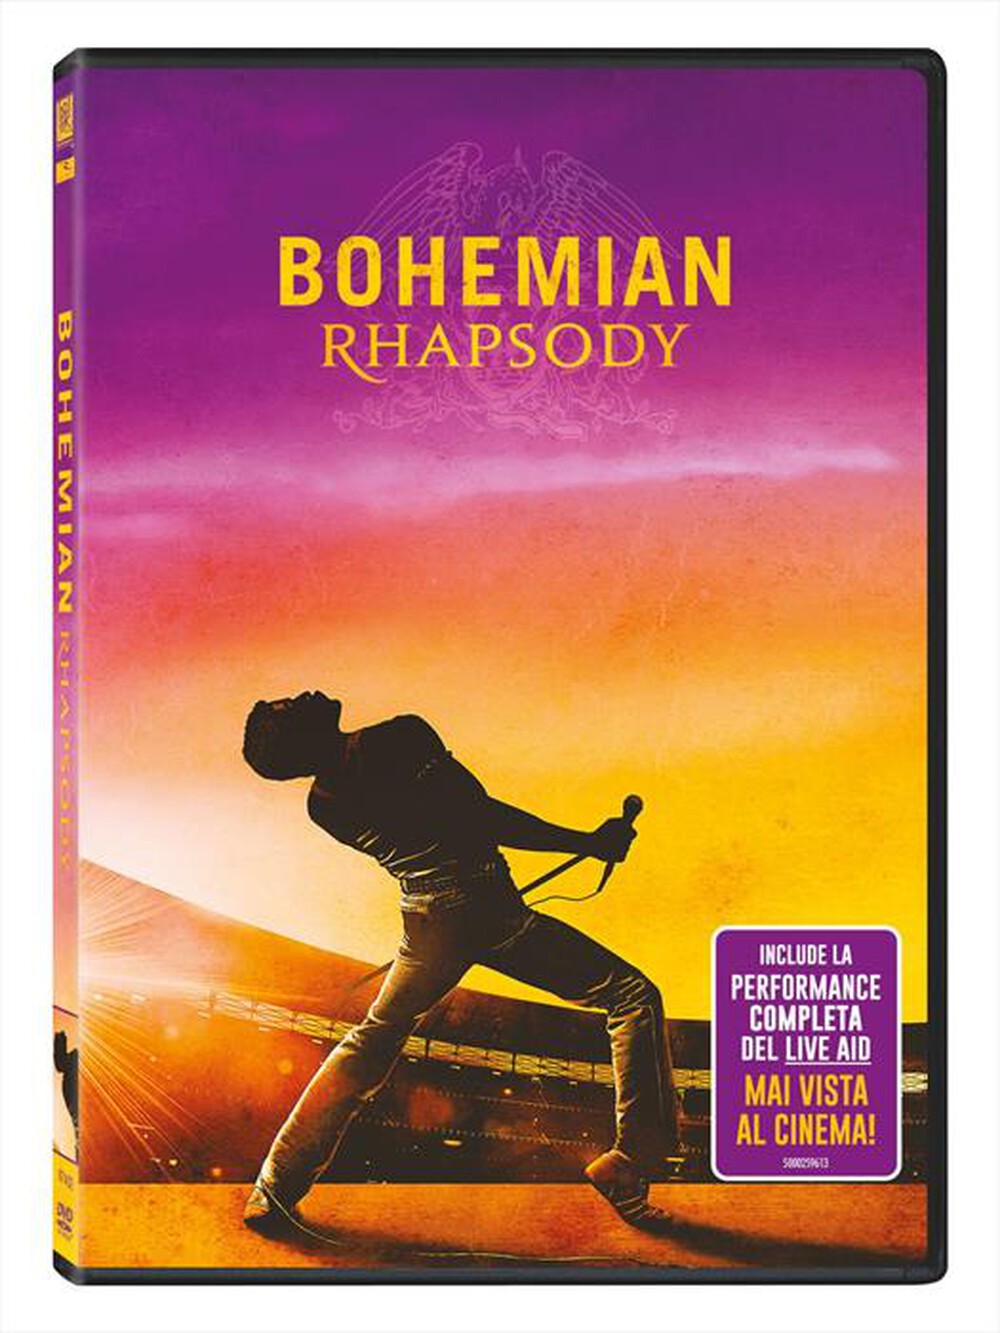 "WALT DISNEY - Bohemian Rhapsody - "